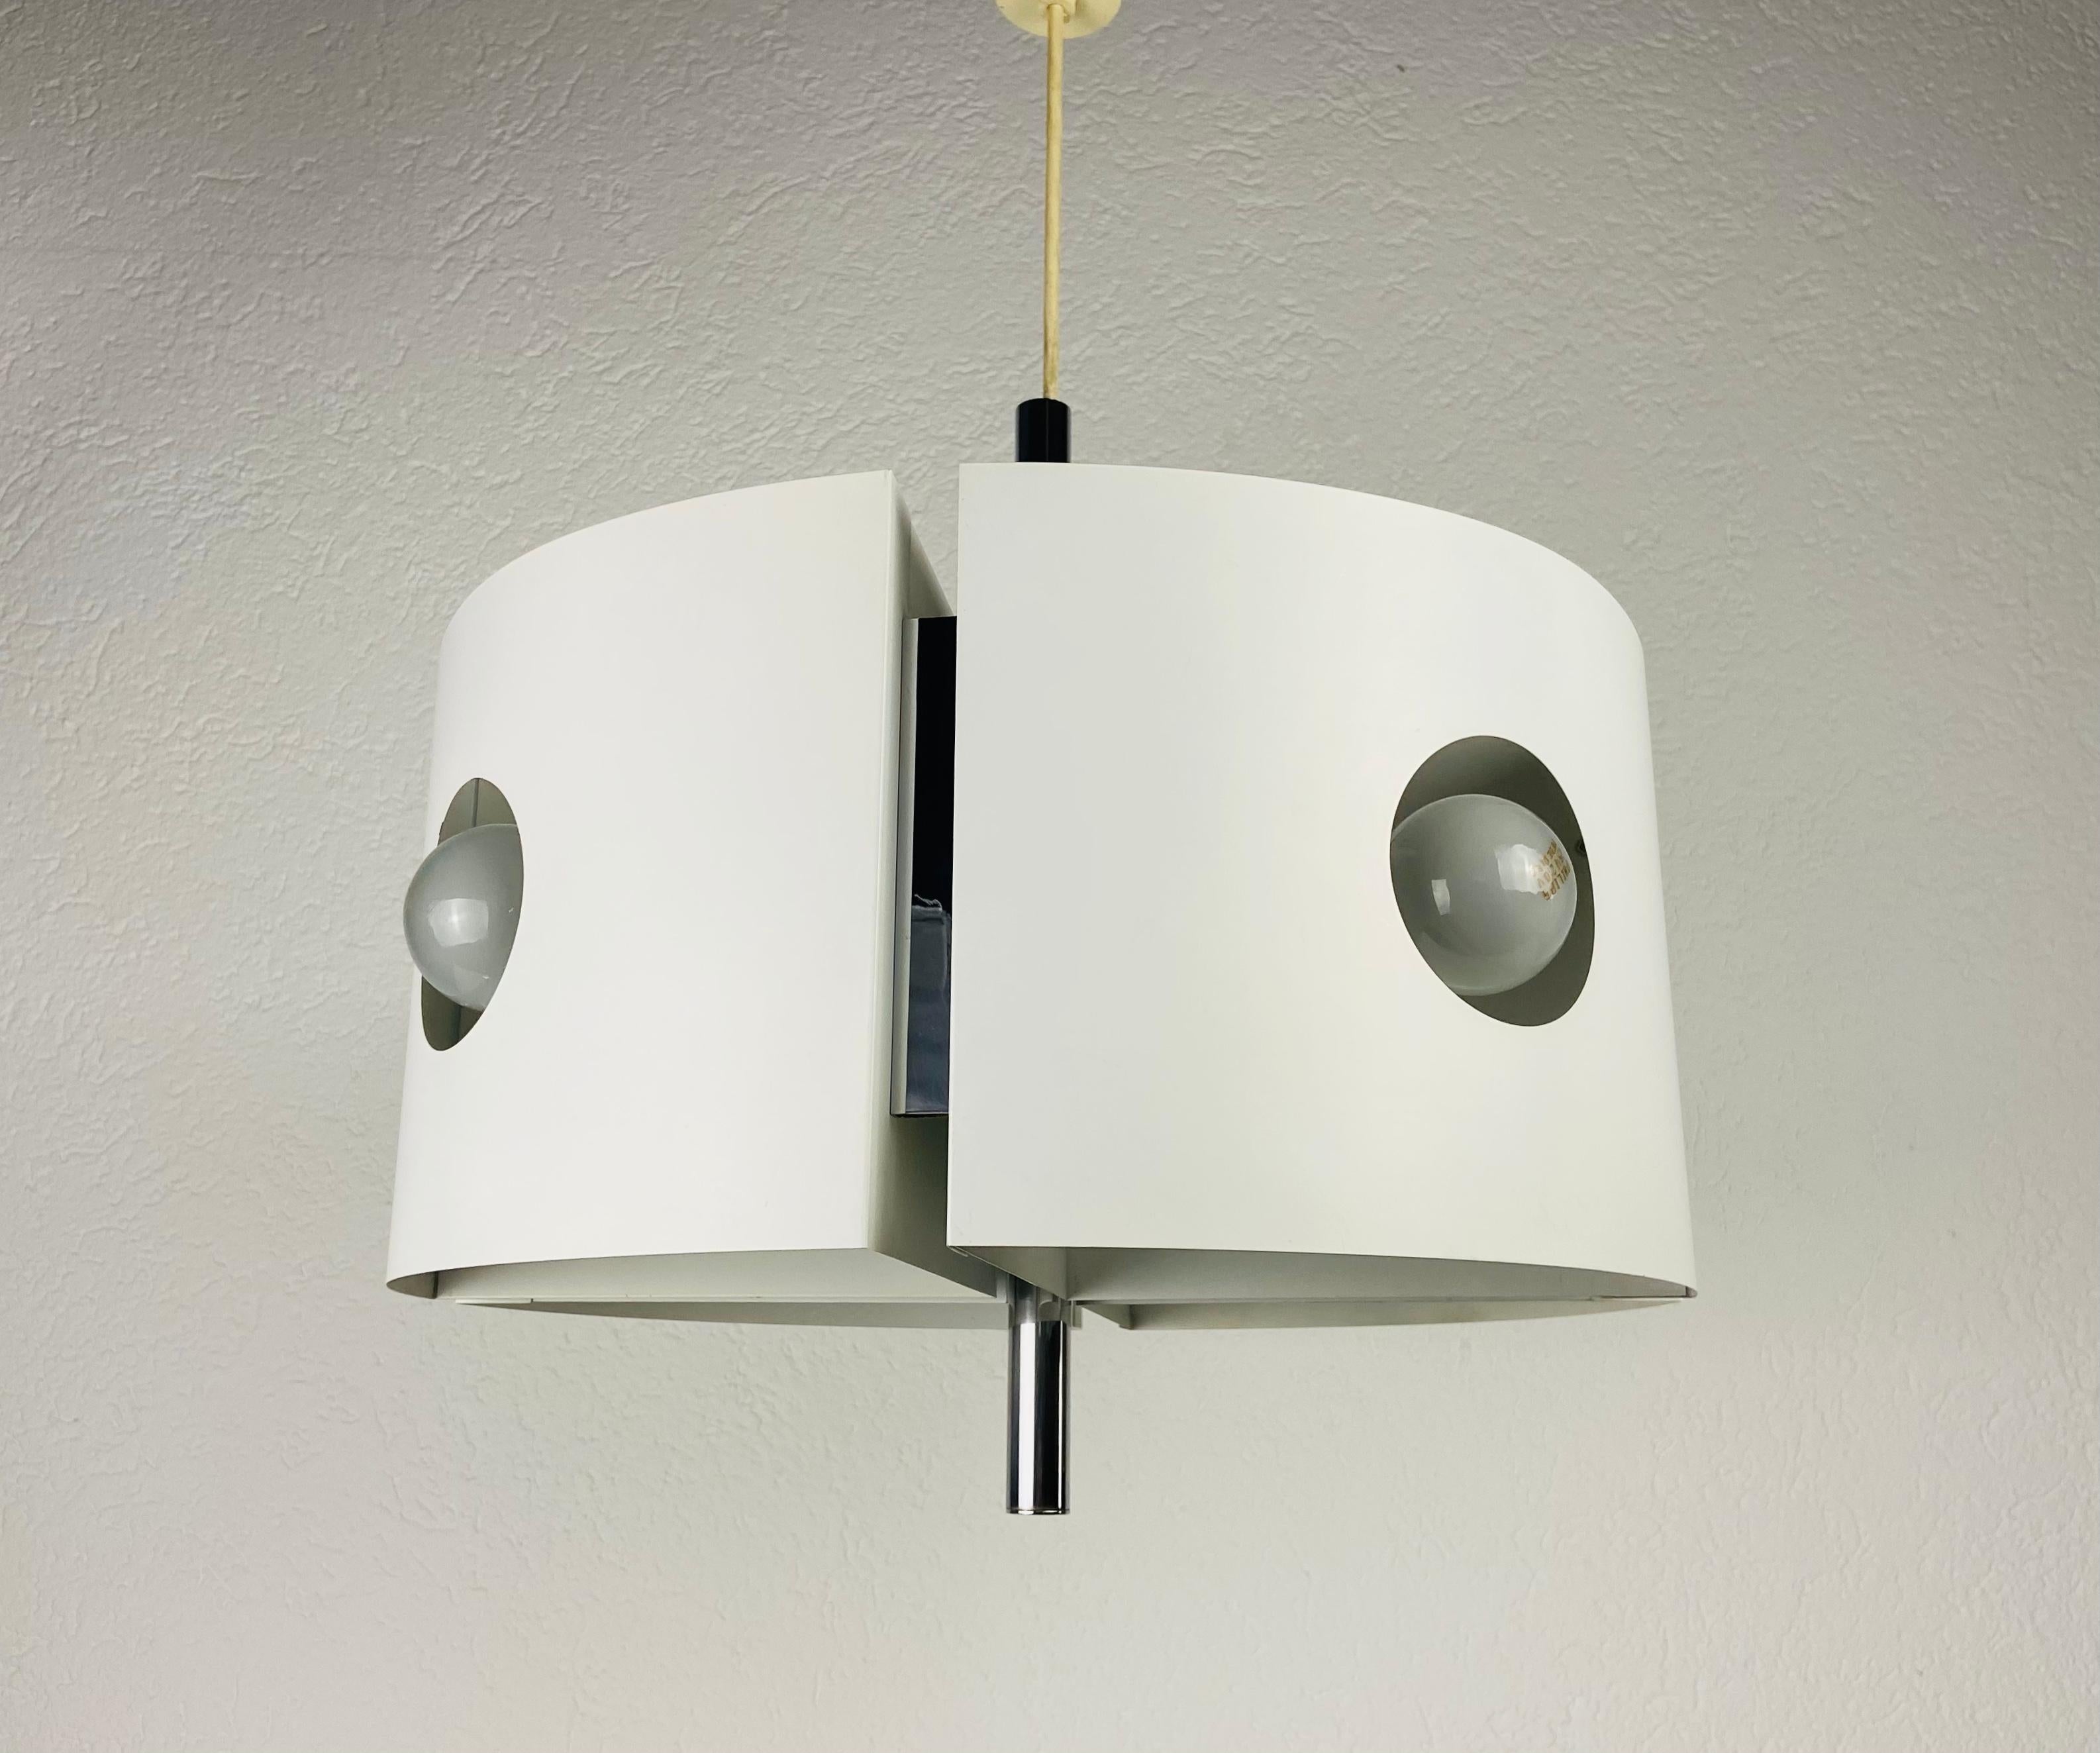 Très rare lampe suspendue Space Age par Kaiser, fabriquée en Allemagne dans les années 1970. Il a été conçu par Klaus Hempel. Le corps de la lampe est entièrement en métal et présente une belle couleur blanche.

Le luminaire nécessite quatre